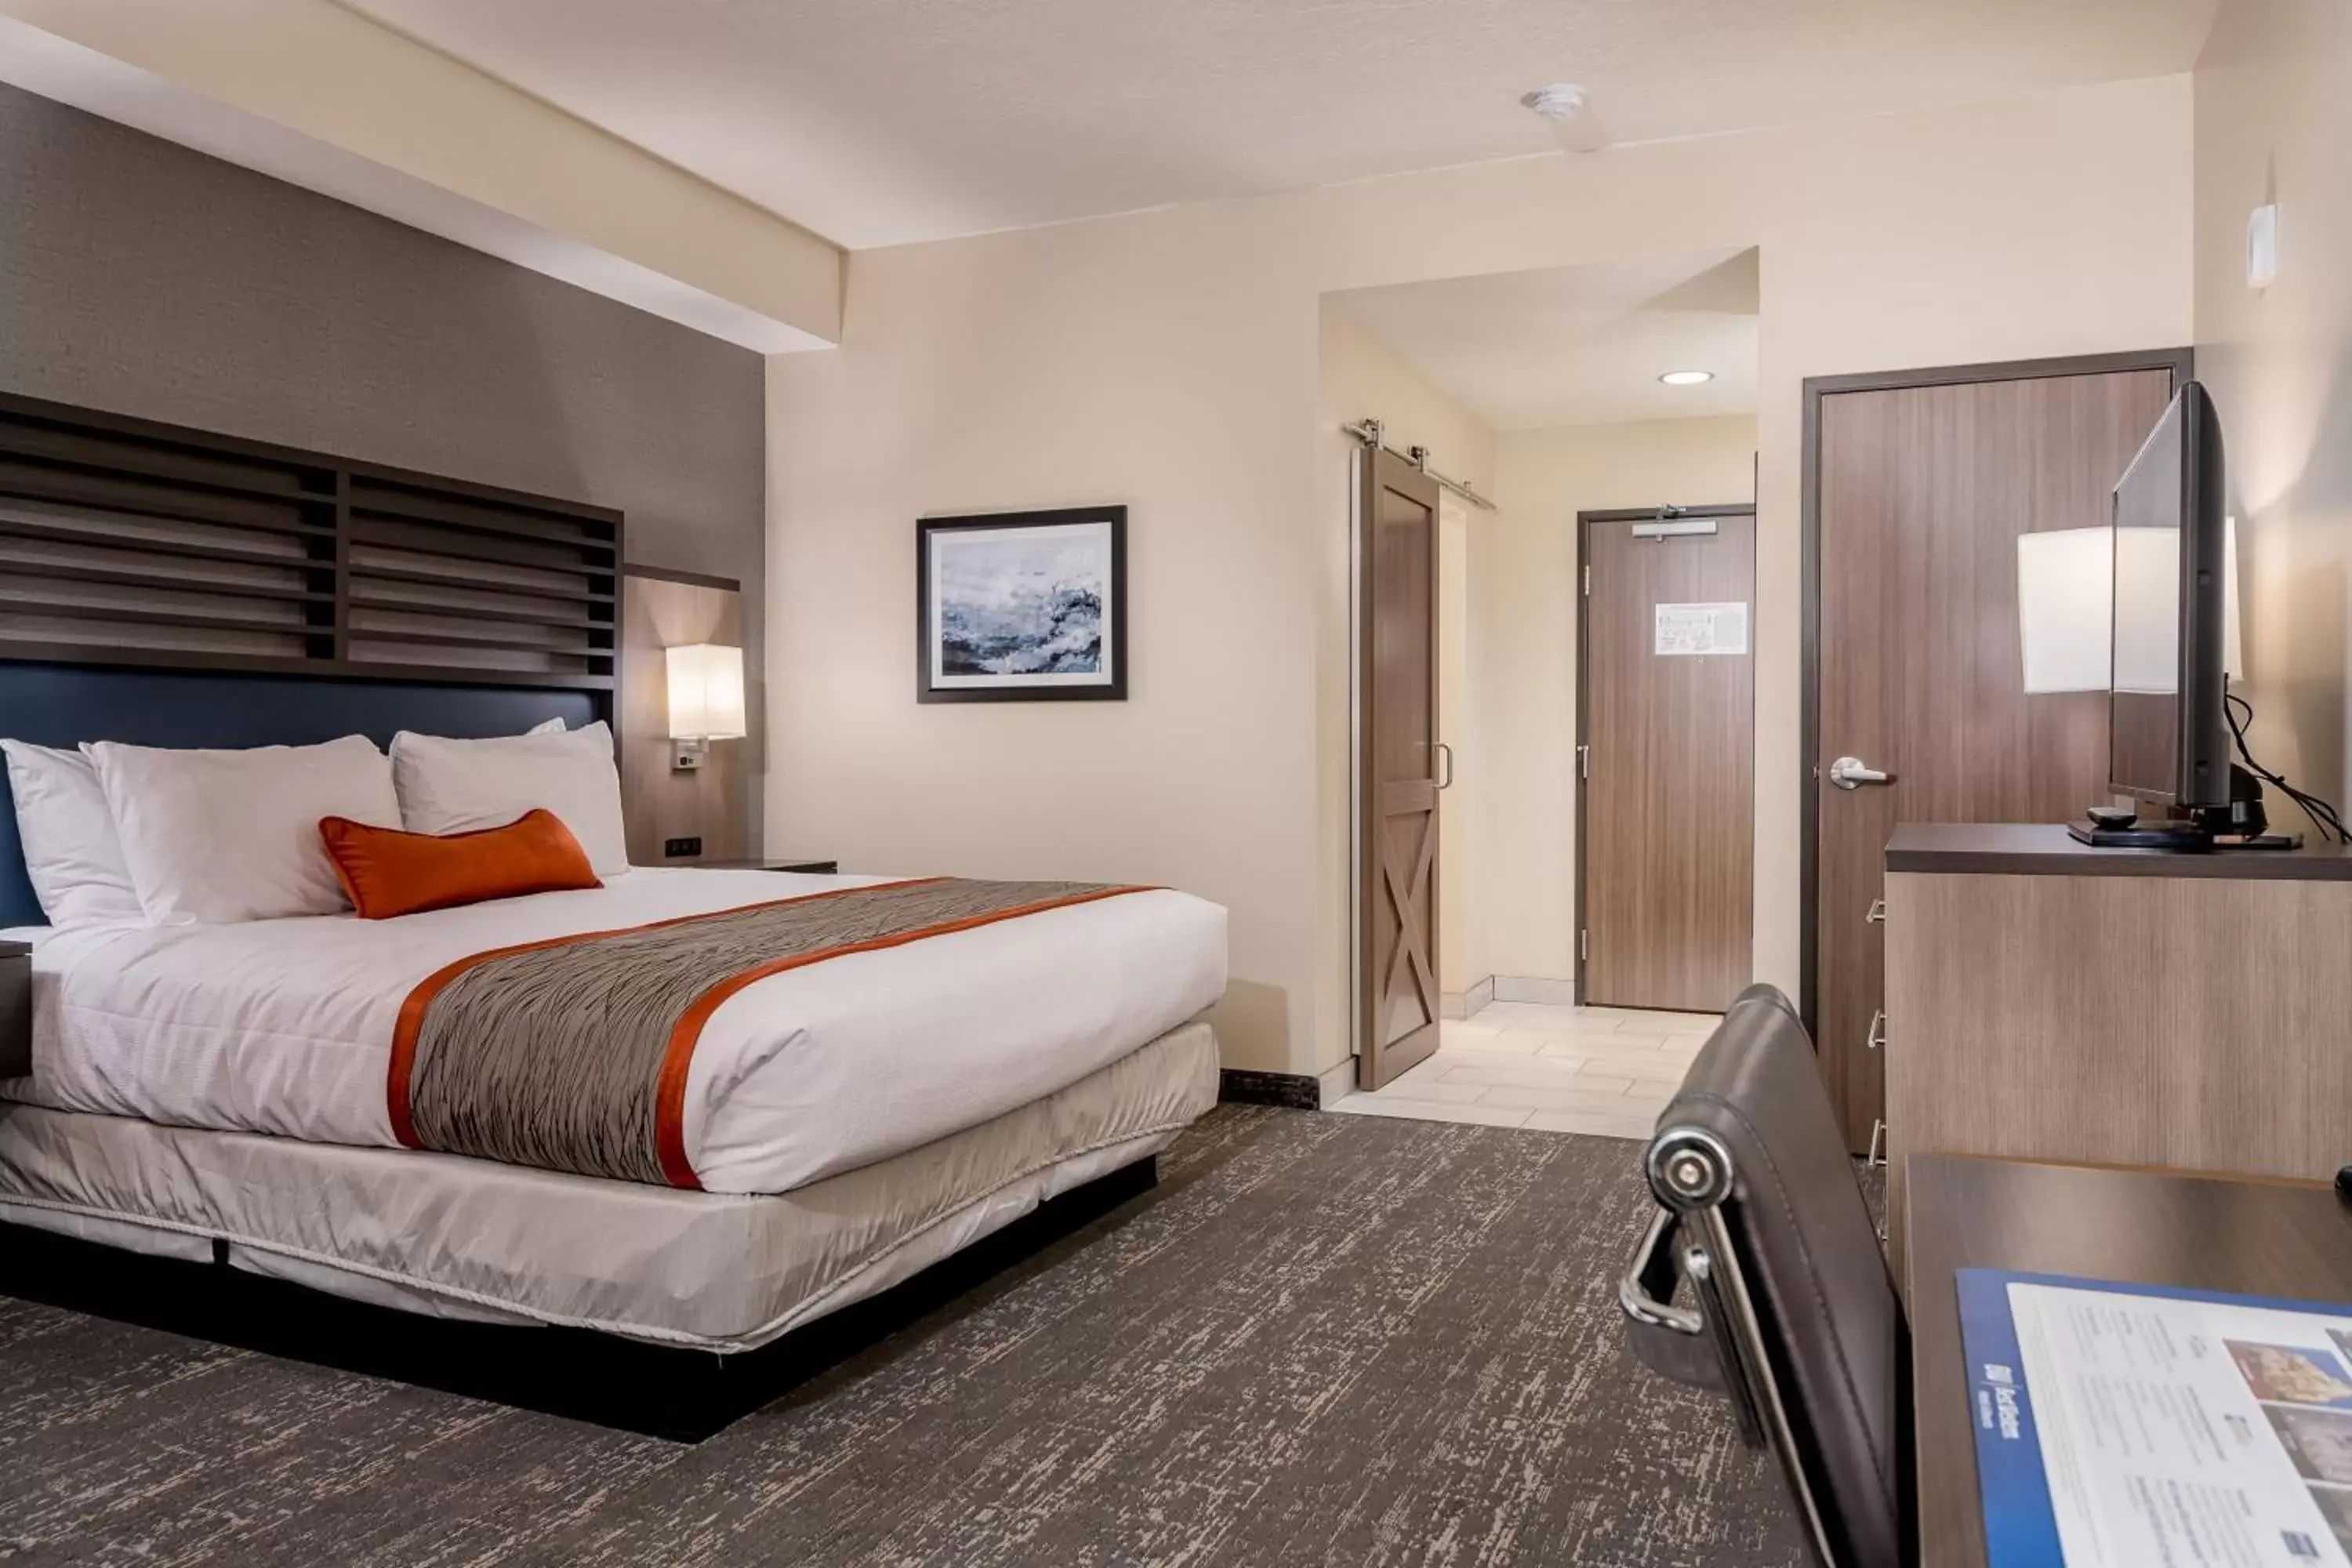 Bedroom, Bed in Best Western Plus Heber Valley Hotel